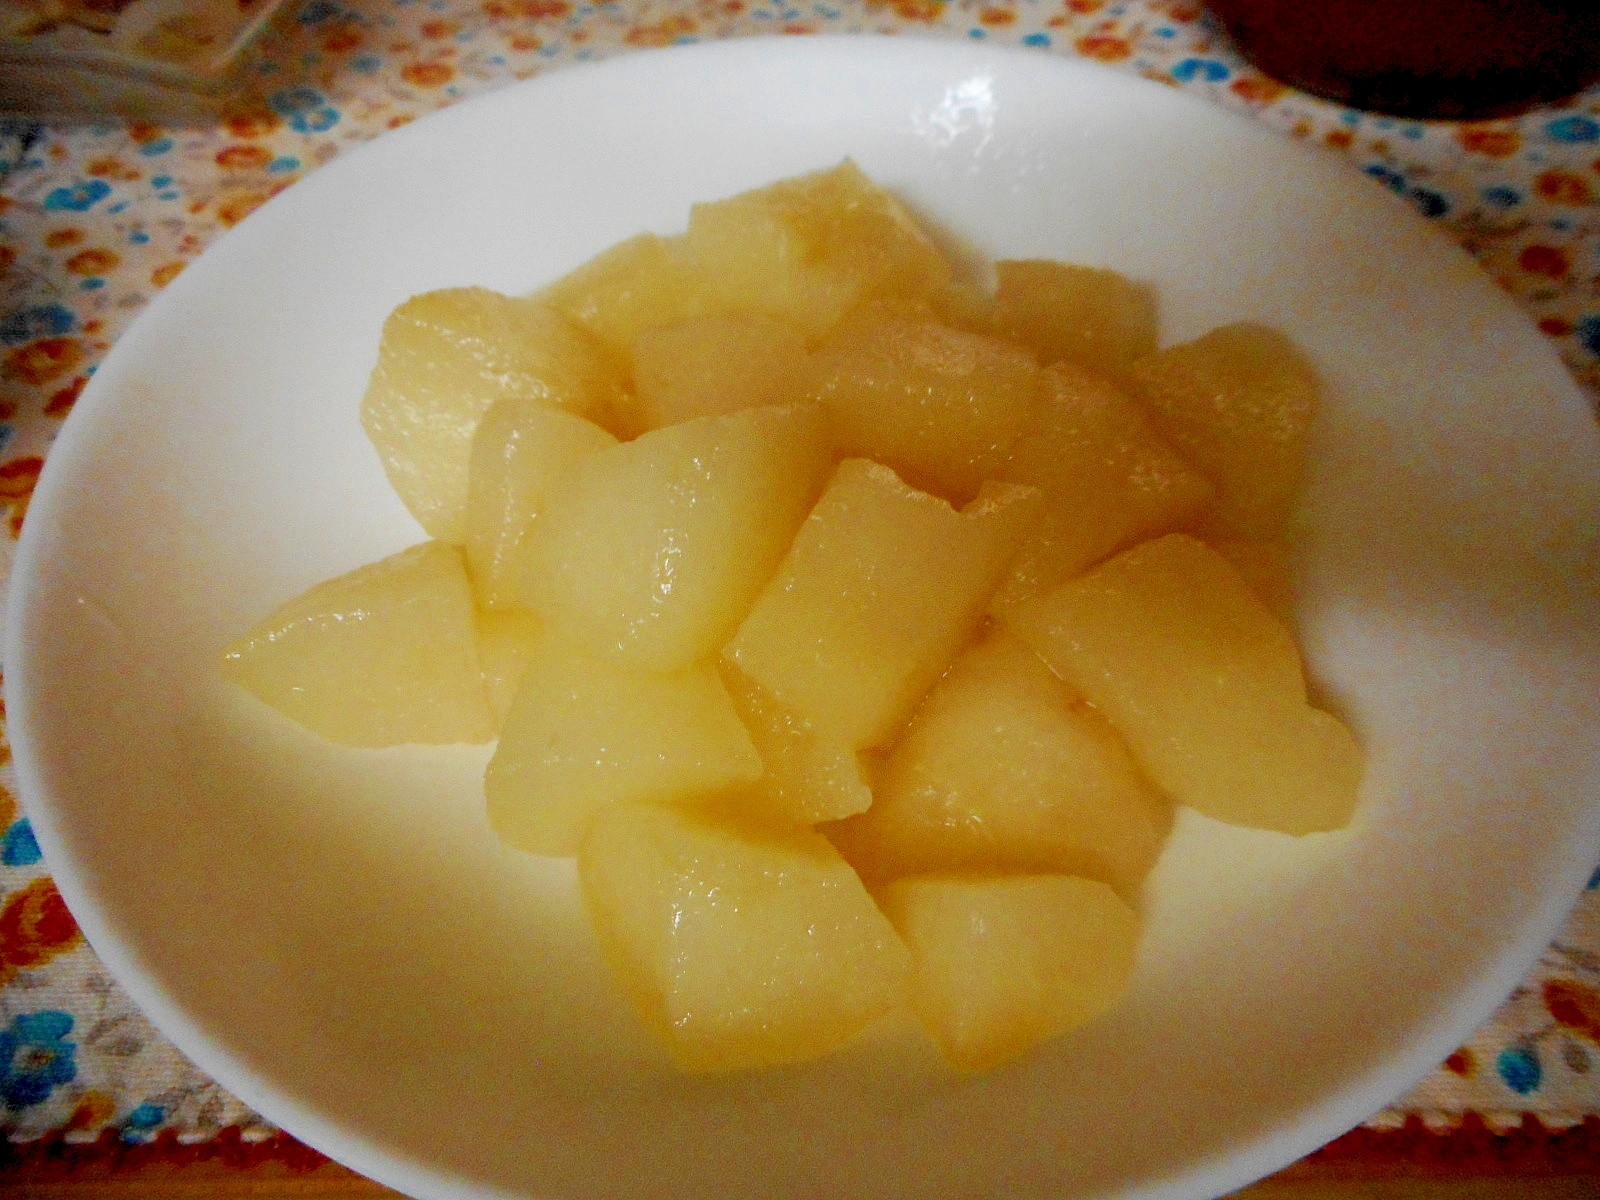 梨のリンゴジュース煮